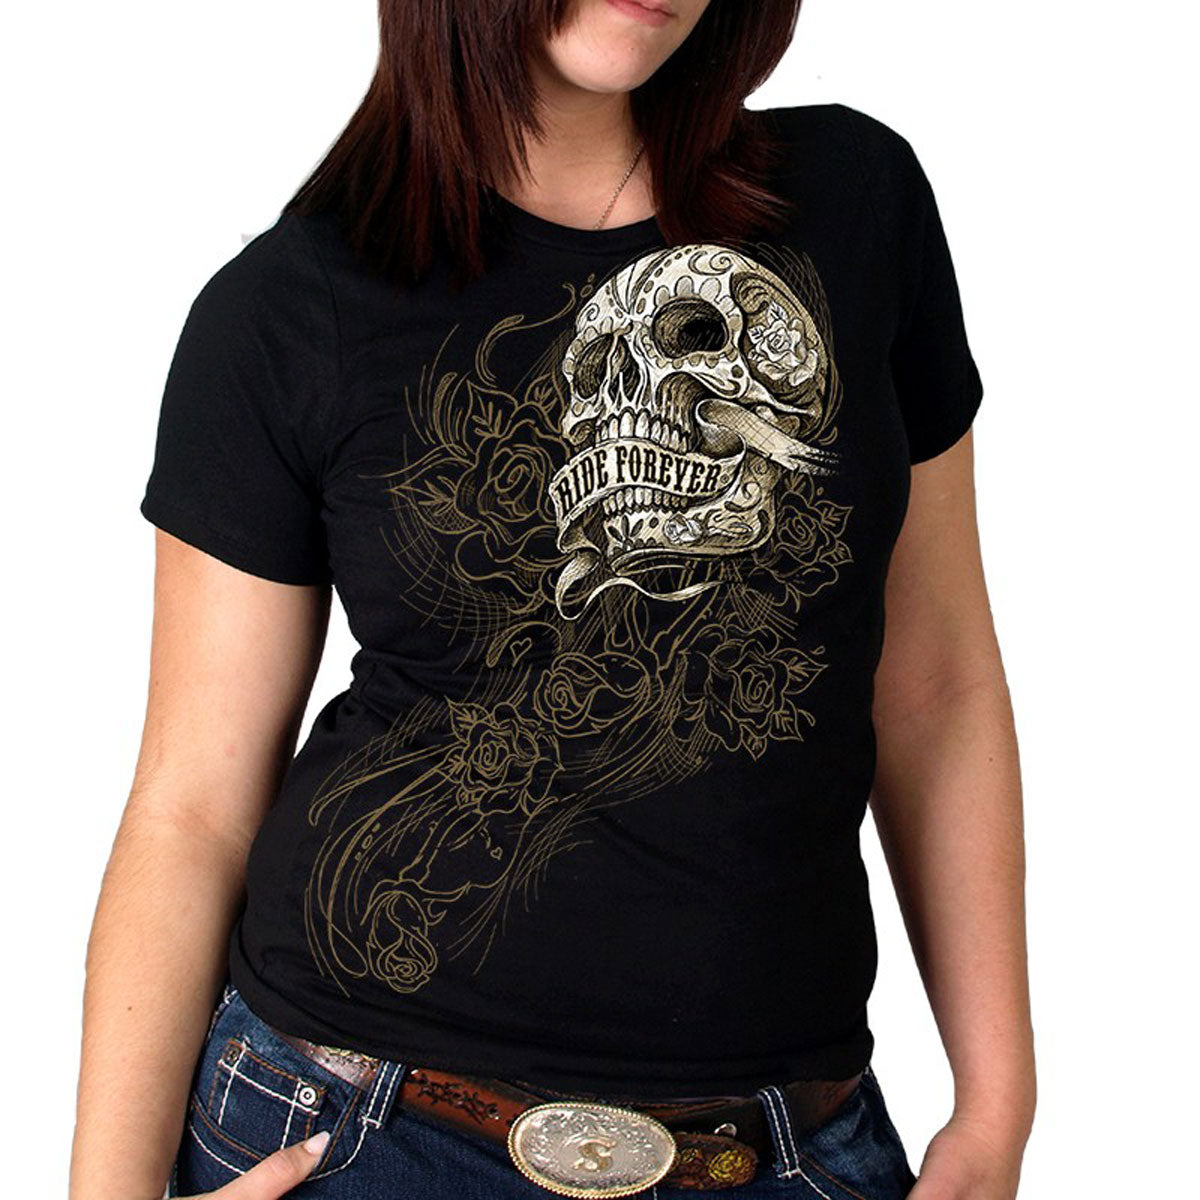 Skulls-Sugar Skulls-Goth-Retro-Rockabilly-Metal Apparel & Merchandise ...